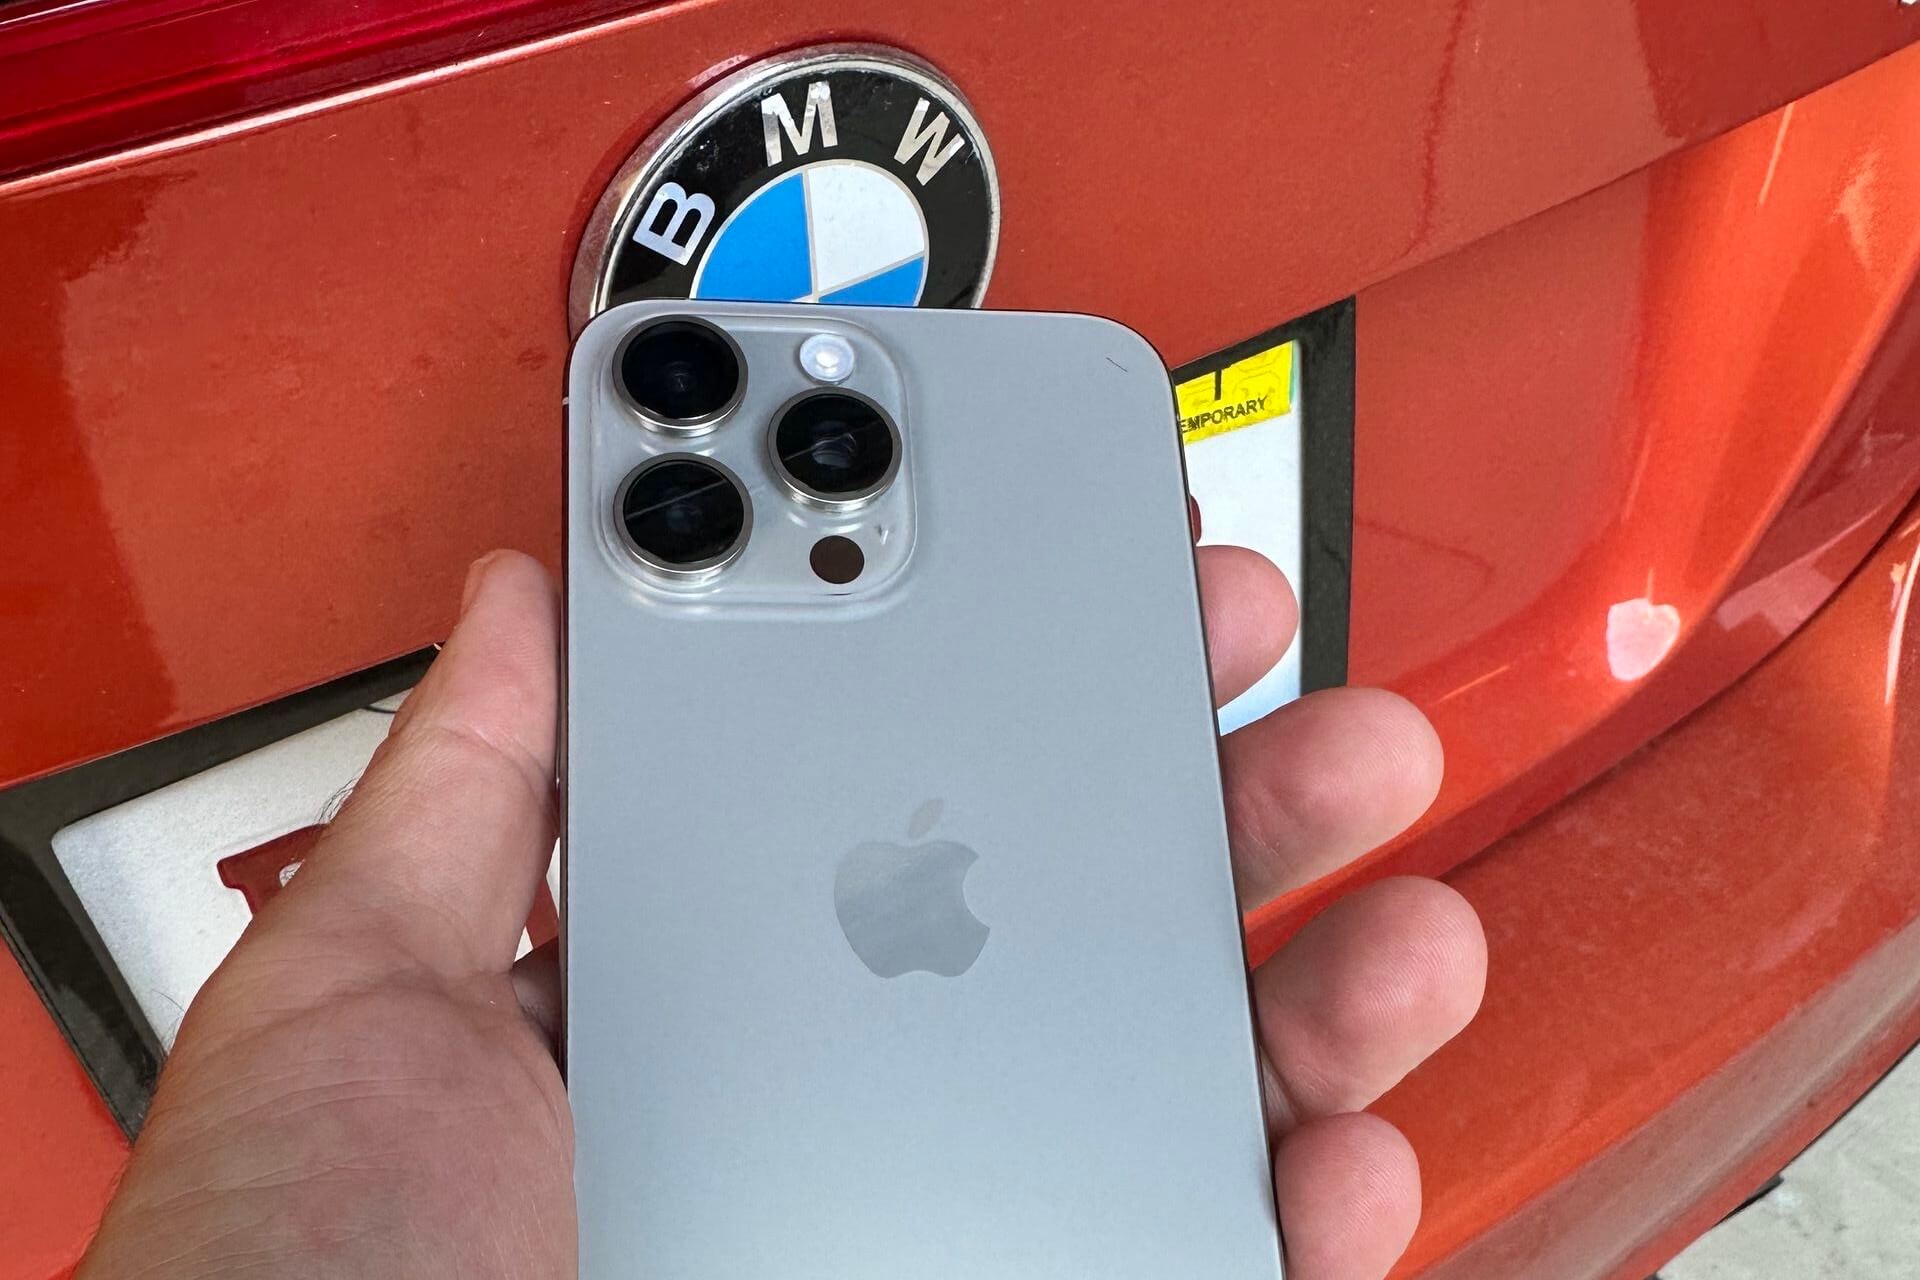 Apple признала, что беспроводные зарядные устройства BMW портят iPhone 15